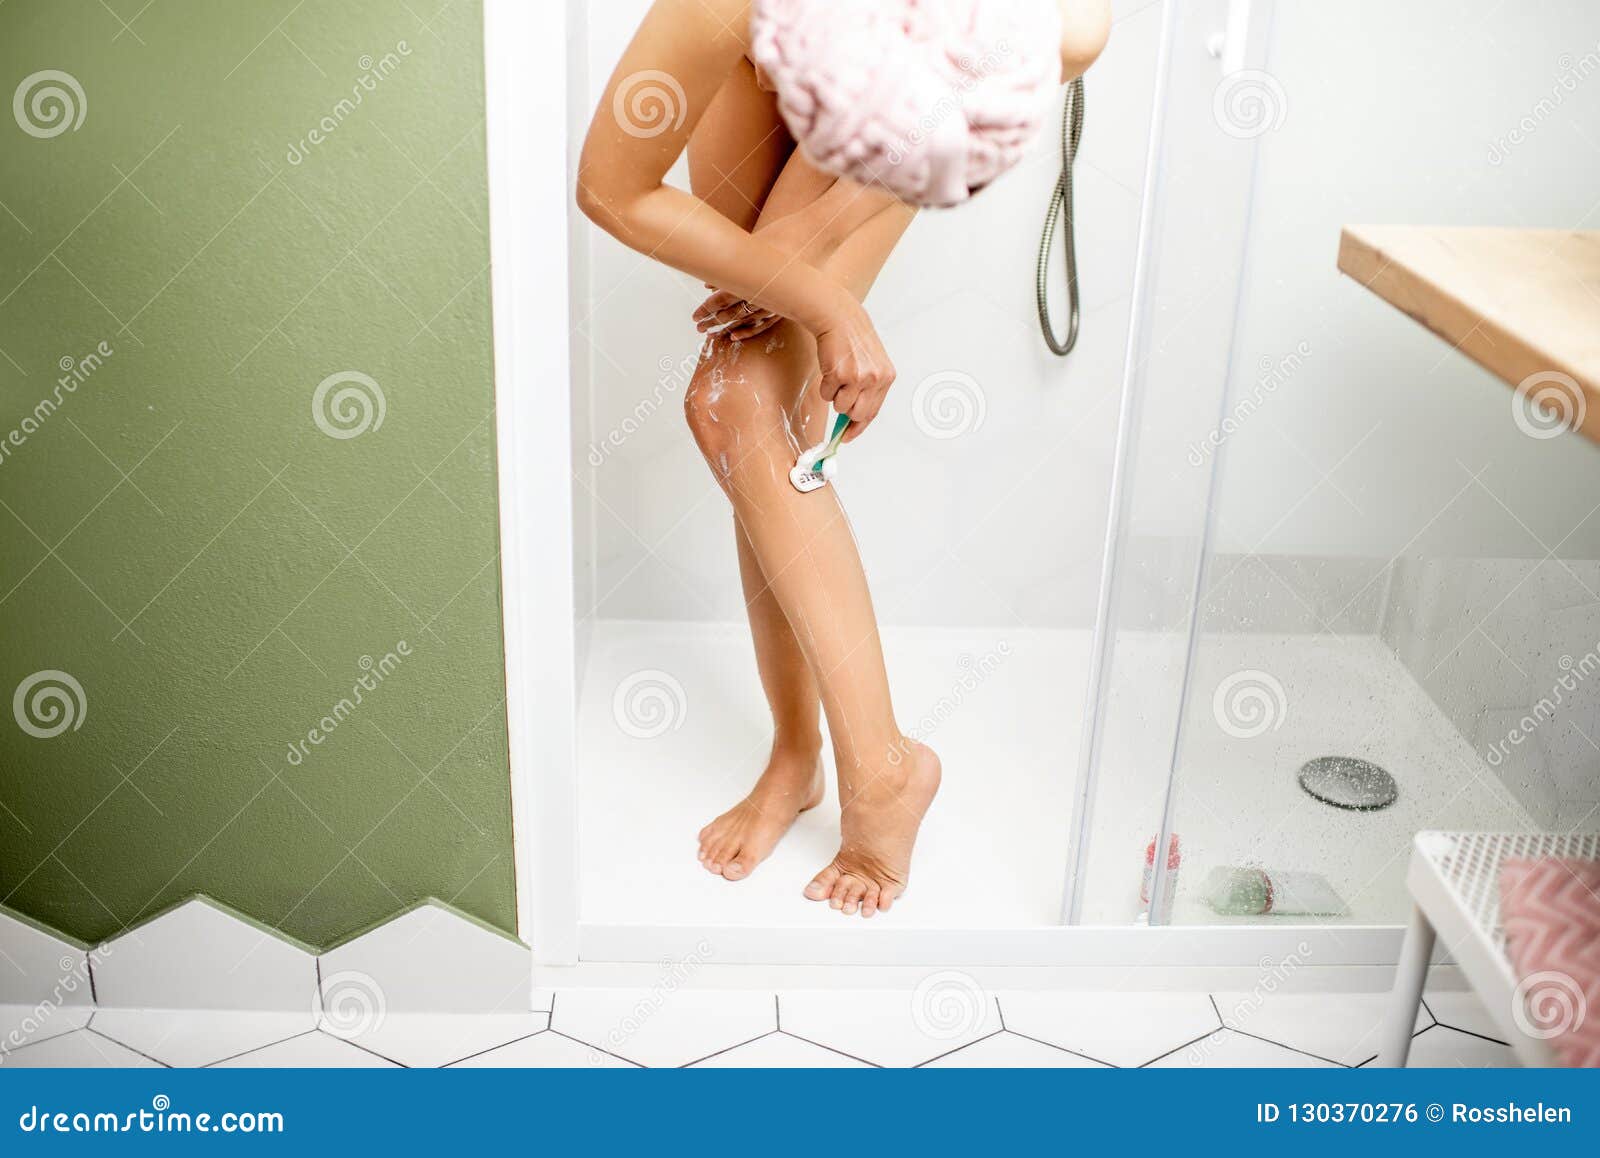 Best of Women shaving in shower